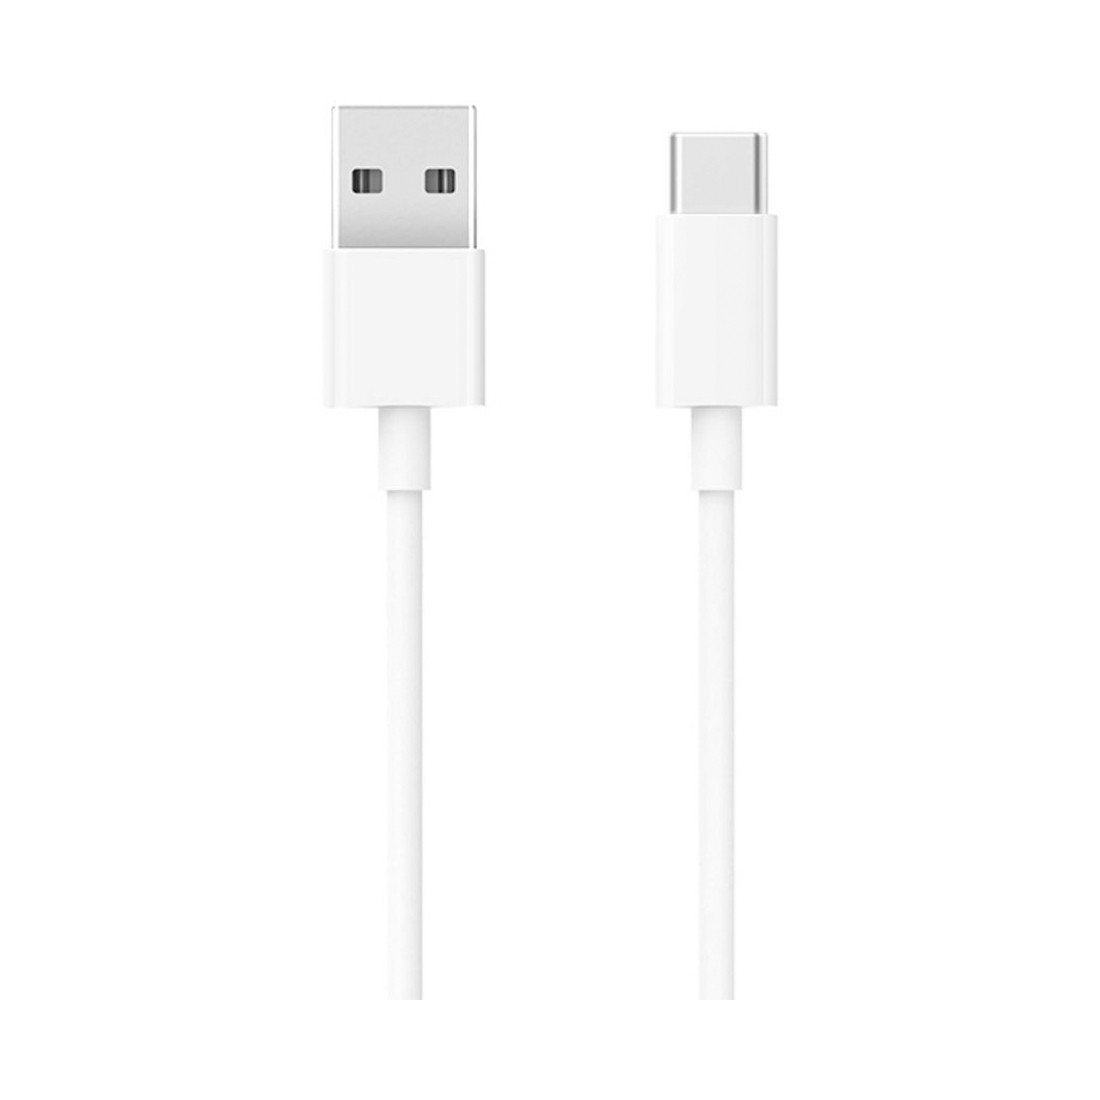 Интерфейсный кабель Xiaomi Mi USB-C Cable 100см Белый